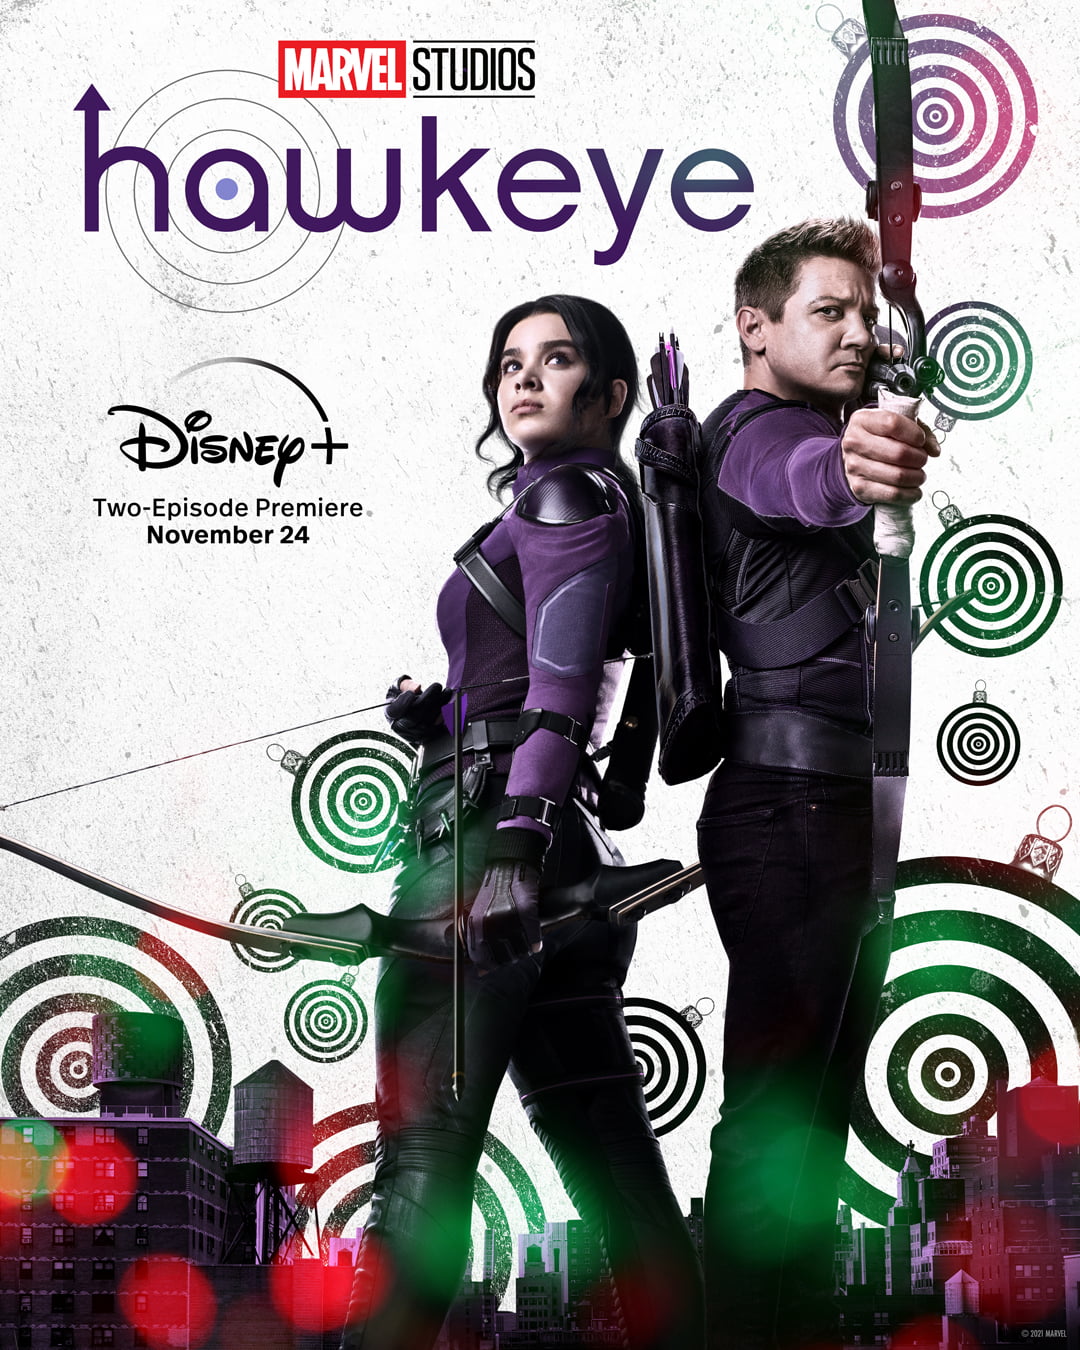 Hawkeye (Season 1) WEB-DL Dual Audio[Hindi DD 5.1 & English] 480p 720p 1080p 4K | Ep (1-5 )Added